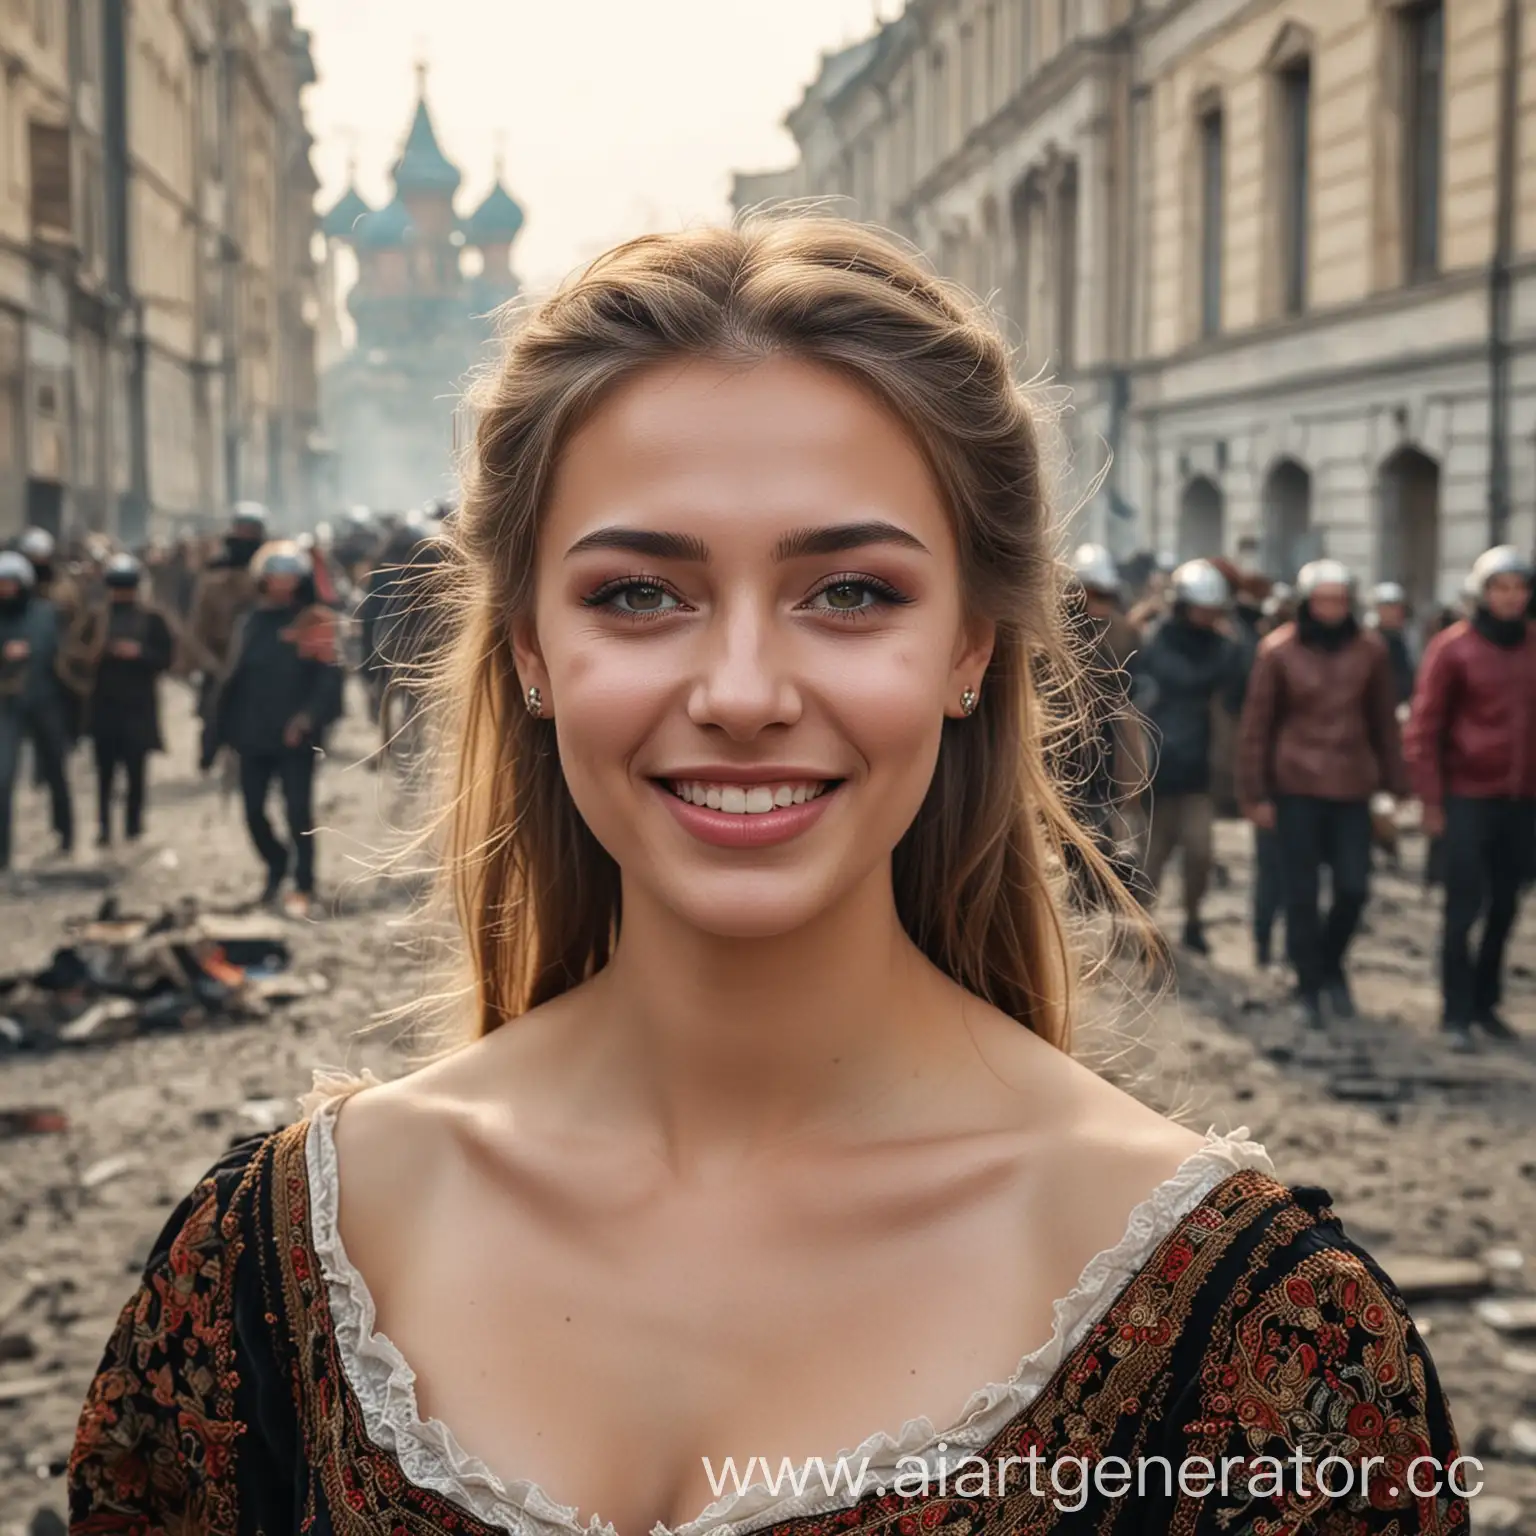 счастливая и красивая русская девушка с макияжем во время смутного времени в россии 16 века на фоне жестоких бунтов, фон хорошо видно